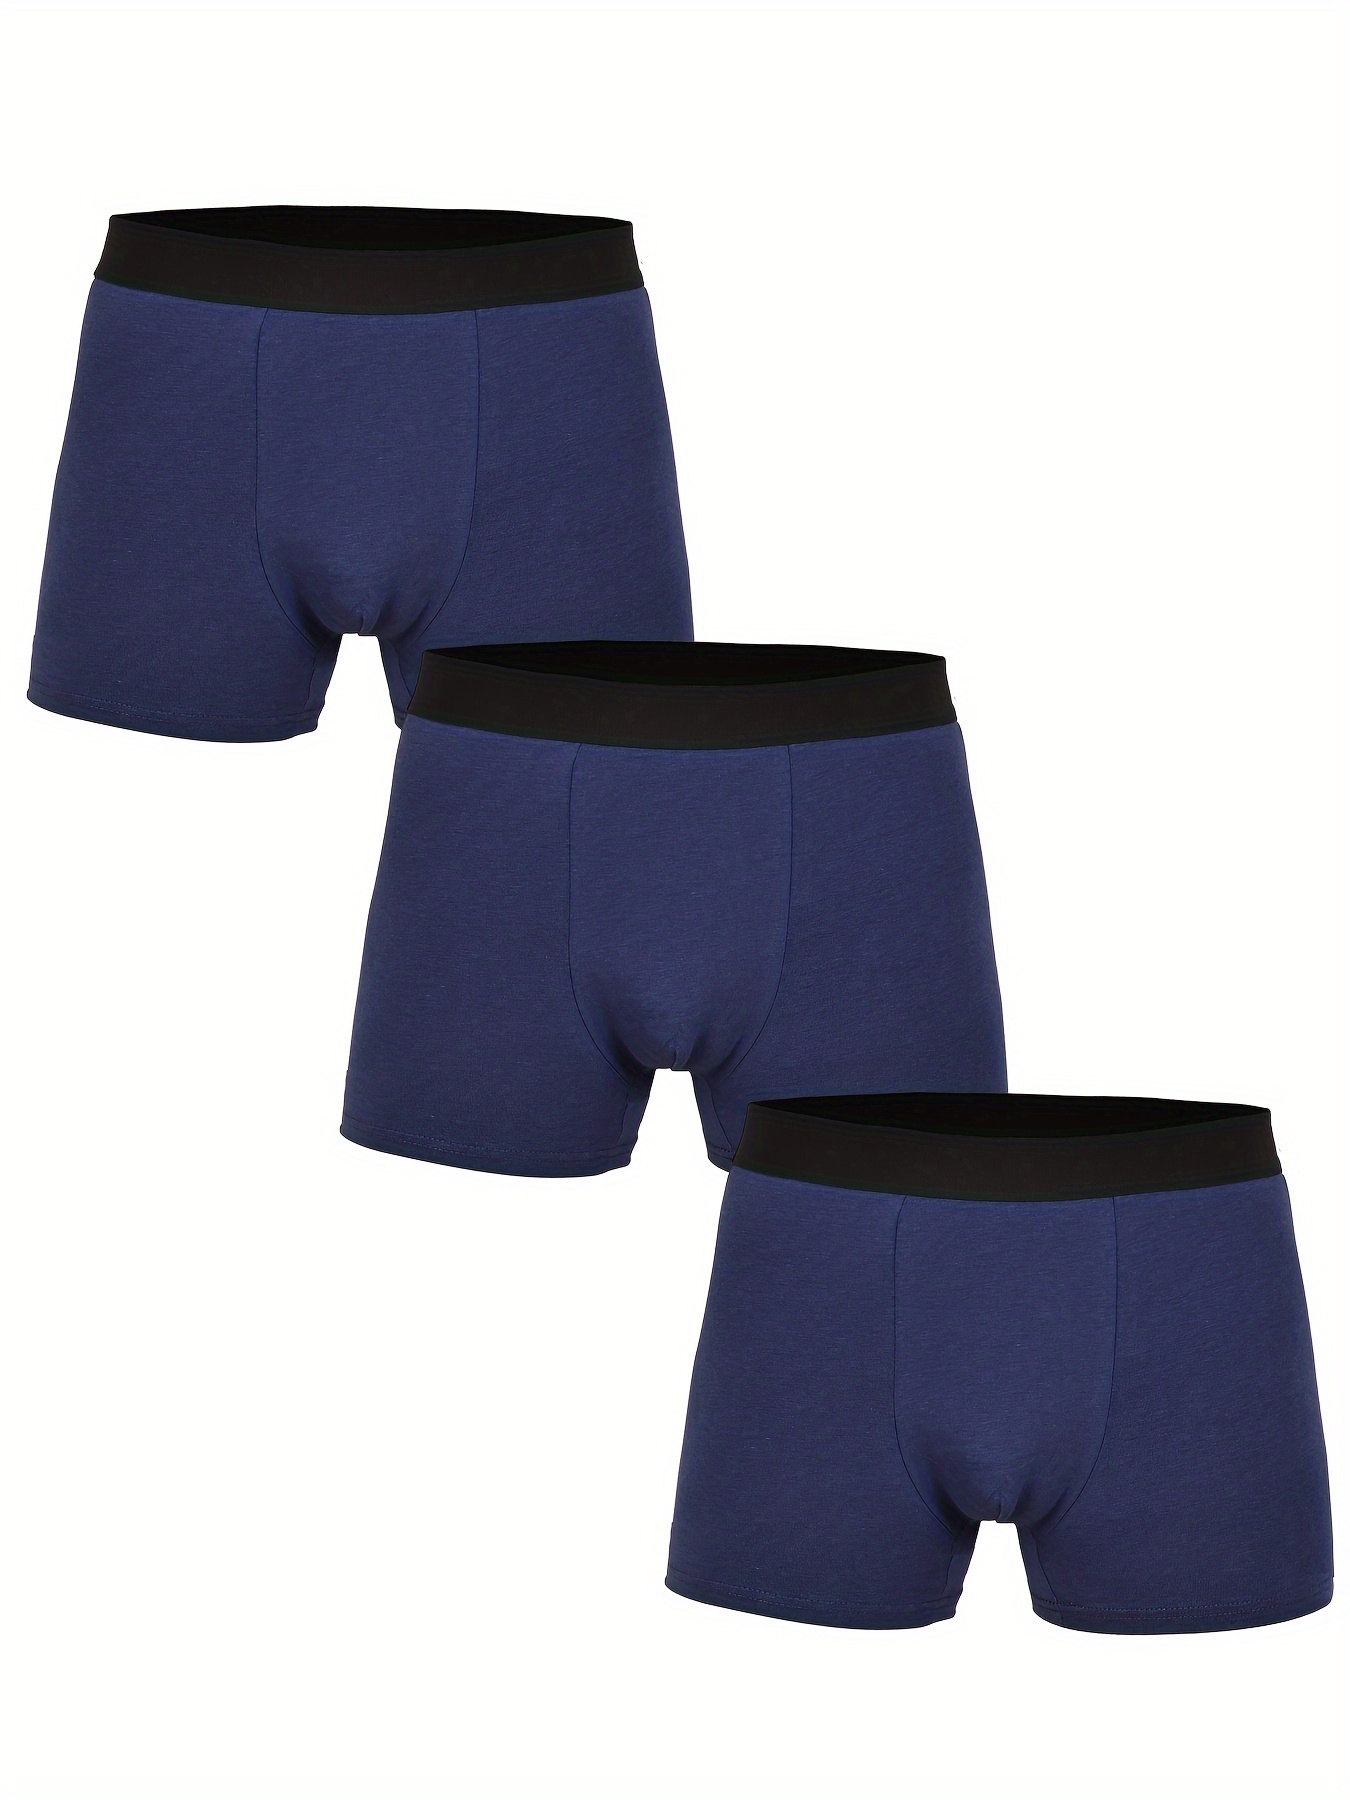 Tapout Boxer Briefs Solid Cotton Spandex Underpants (Men's) 6 Pack